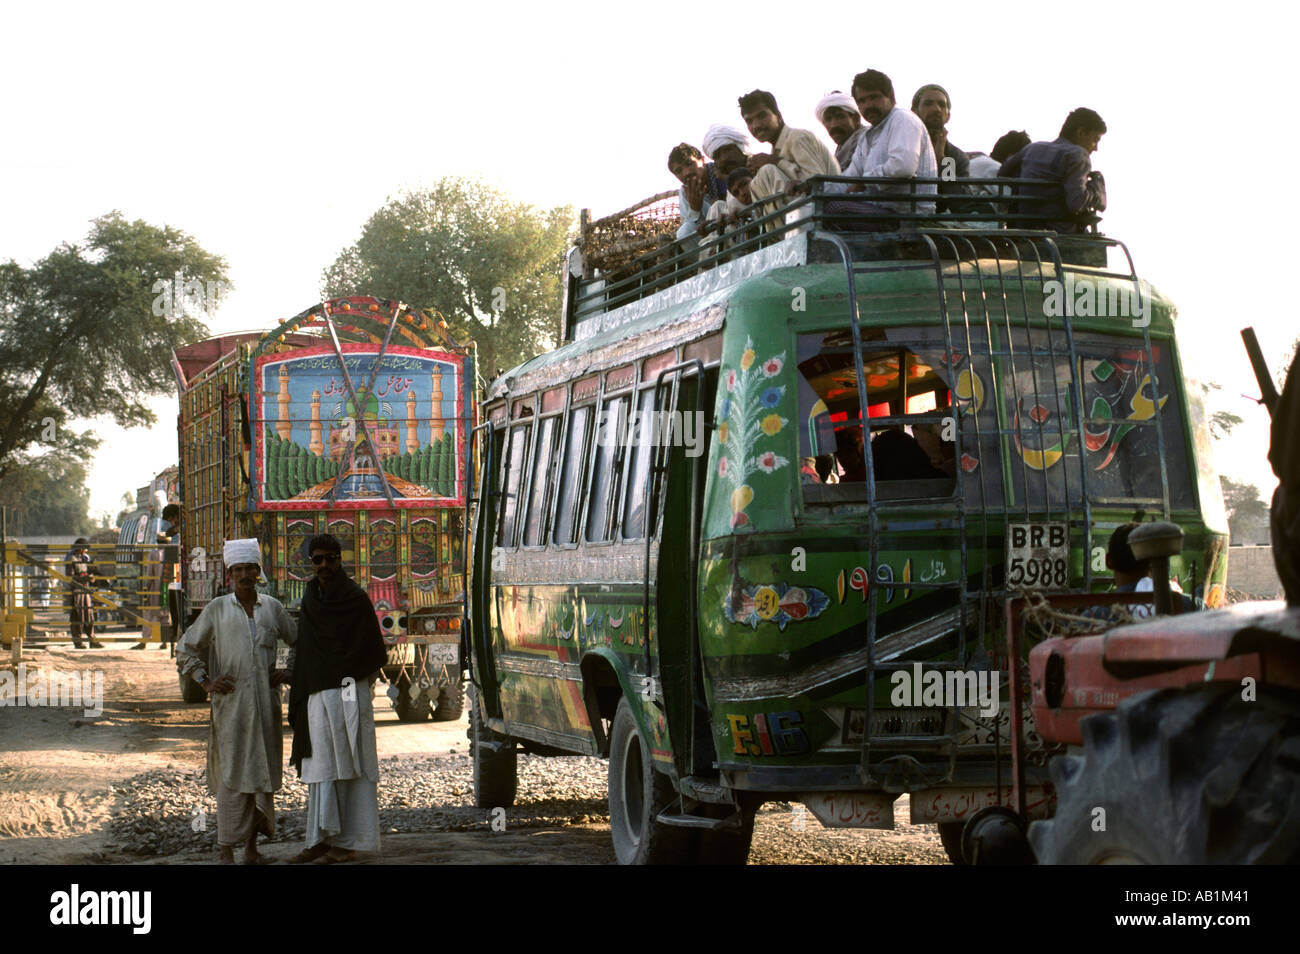 Du Sud Pakistan Punjab Uch Sharif transporter des passagers sur le dessus de l'autobus Banque D'Images